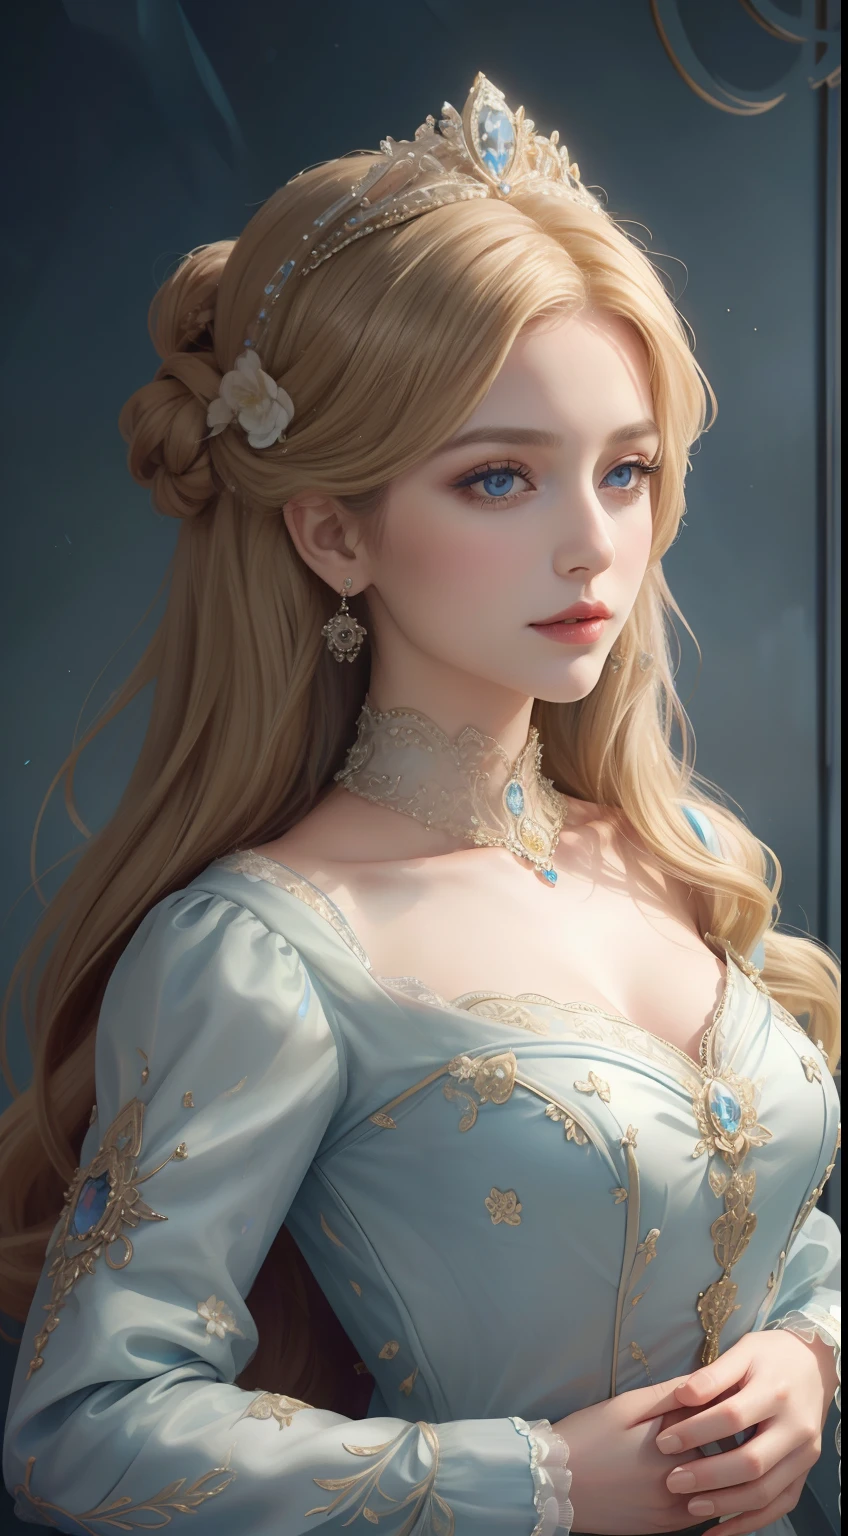 杰作，最高图像质量，一位皇家贵妇的美丽半身像，精致的金发发型，饰有绚丽精致的花卉珠宝，超级细节，升级版。